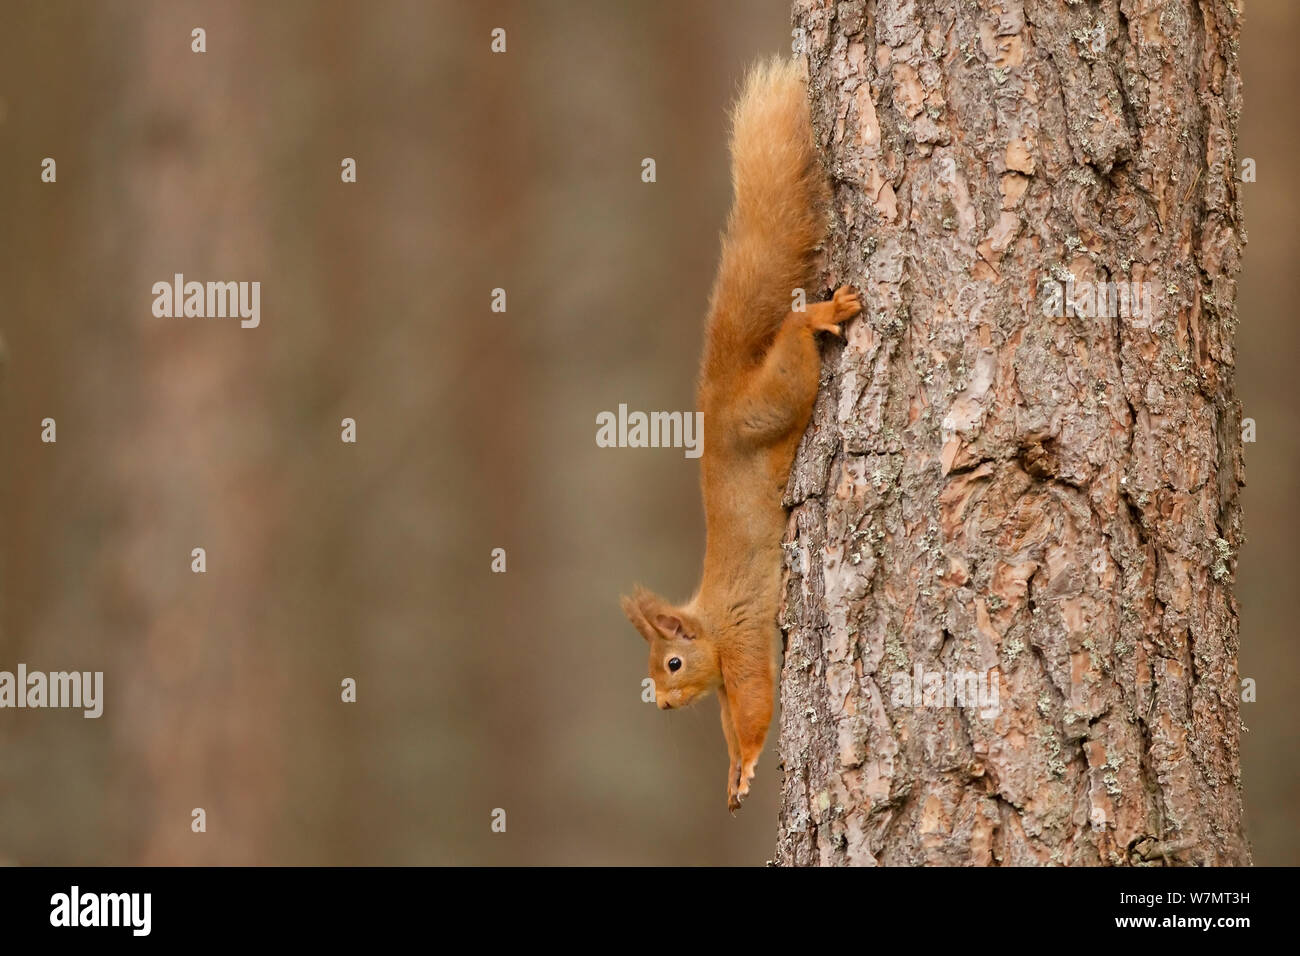 Red scoiattolo (Sciurus vulgaris) stretching a pino silvestre tronco di albero, Cairngorms National Park, Scozia, marzo 2012. Foto Stock